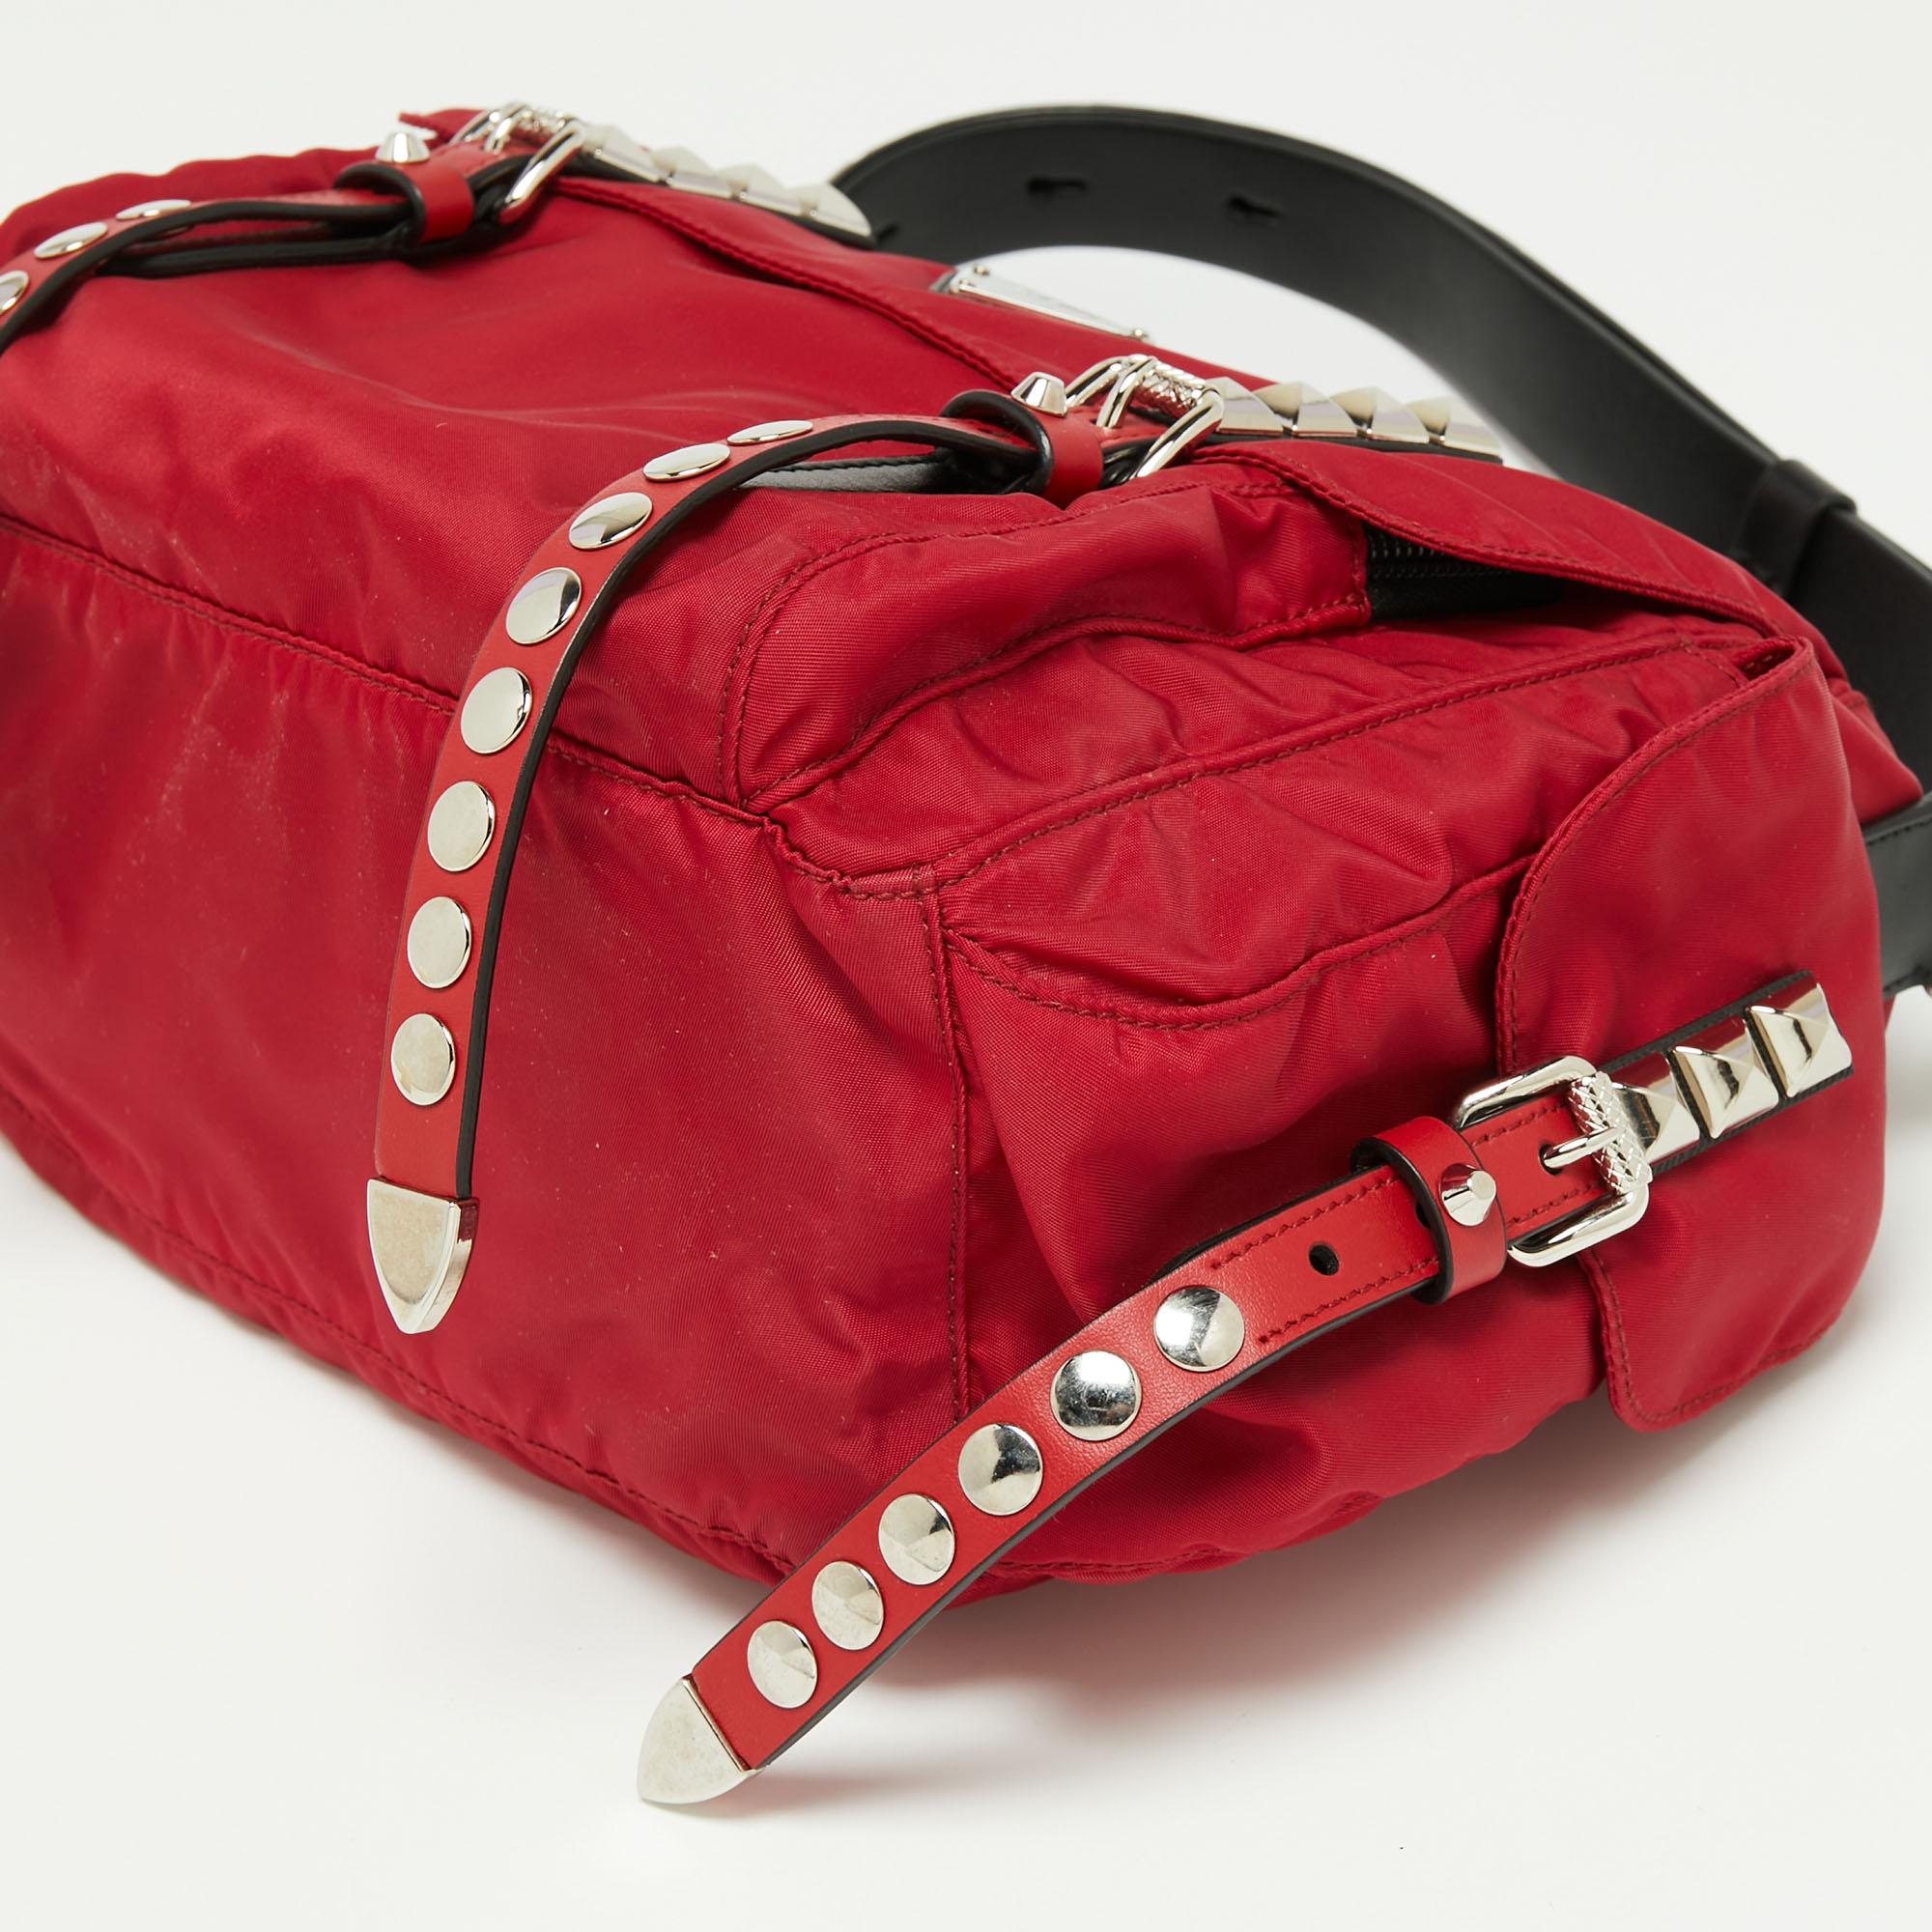 Prada Red/Black Nylon and Leather New Vela Studded Messenger Bag 1